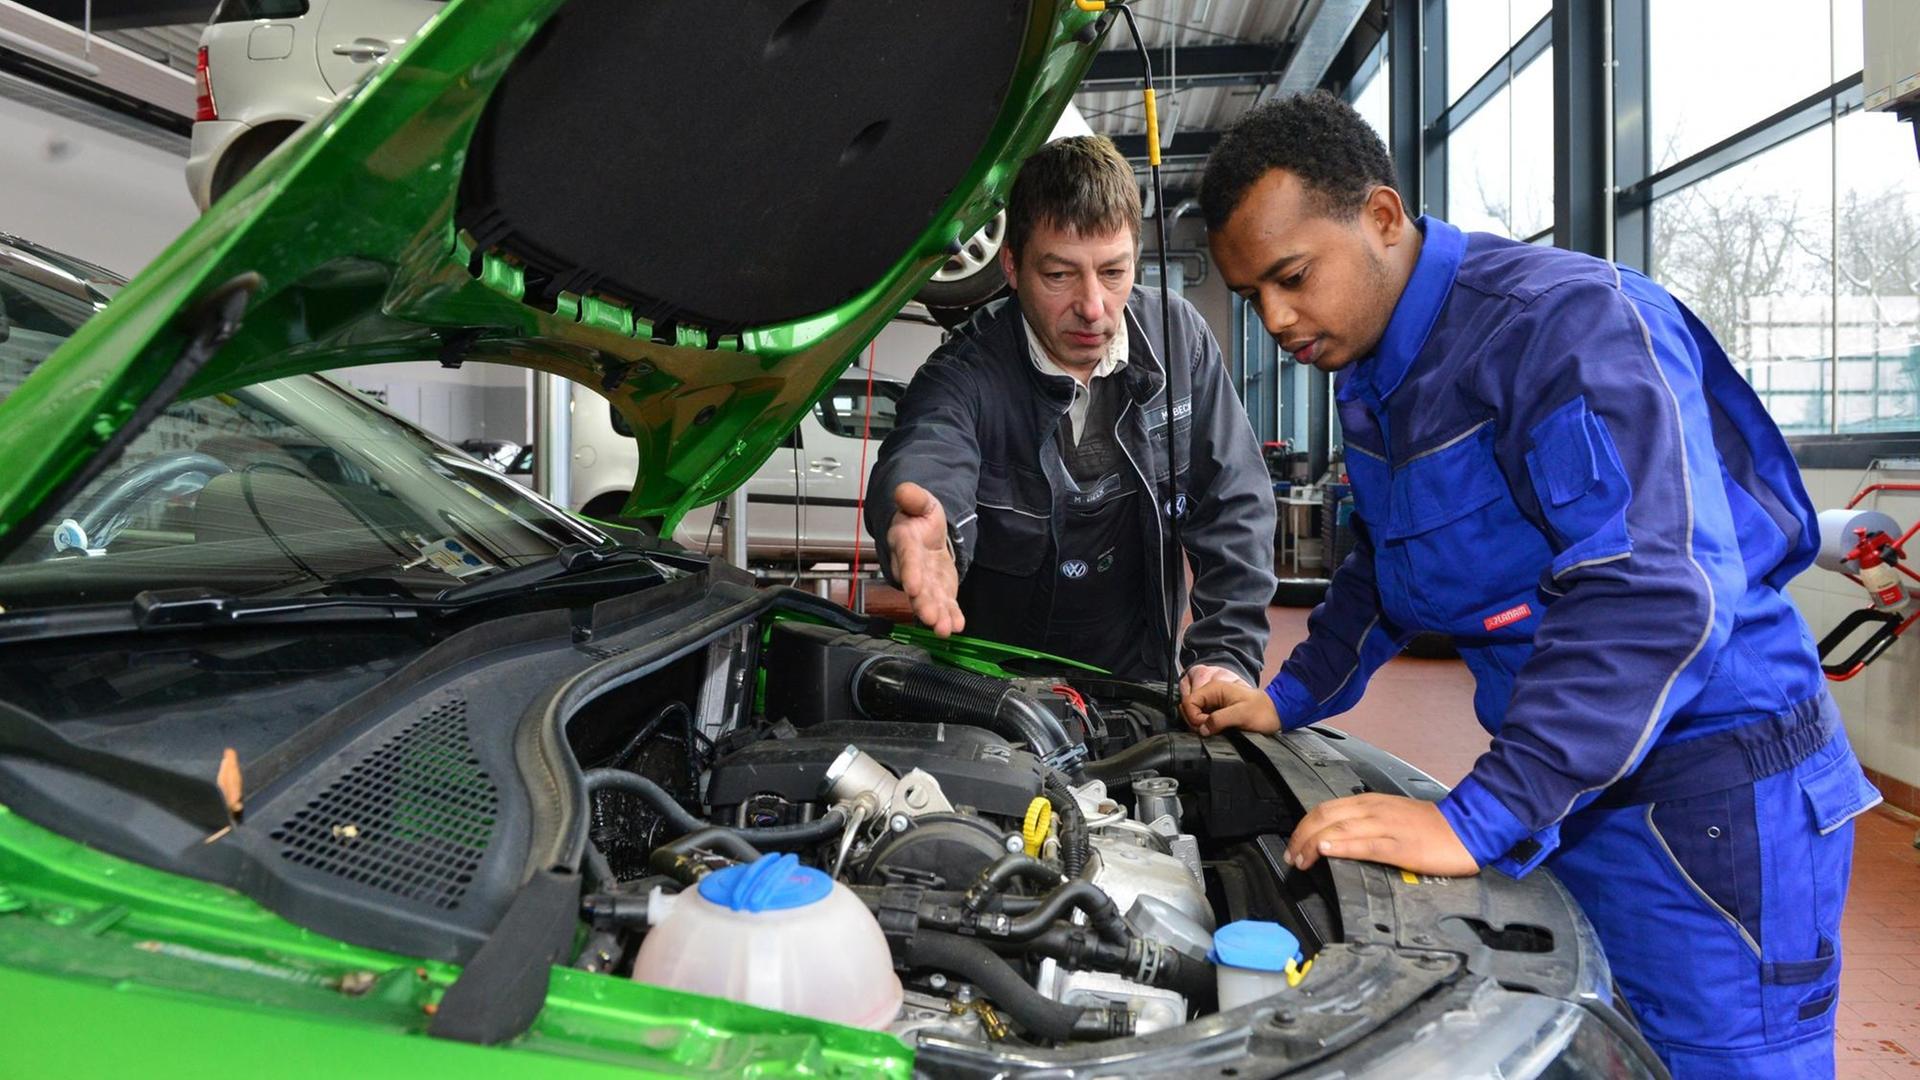 Ein Flüchtling aus Eritrea bei seinem Praktikum in einer Autowerkstatt in Nordhausen (Thüringen).